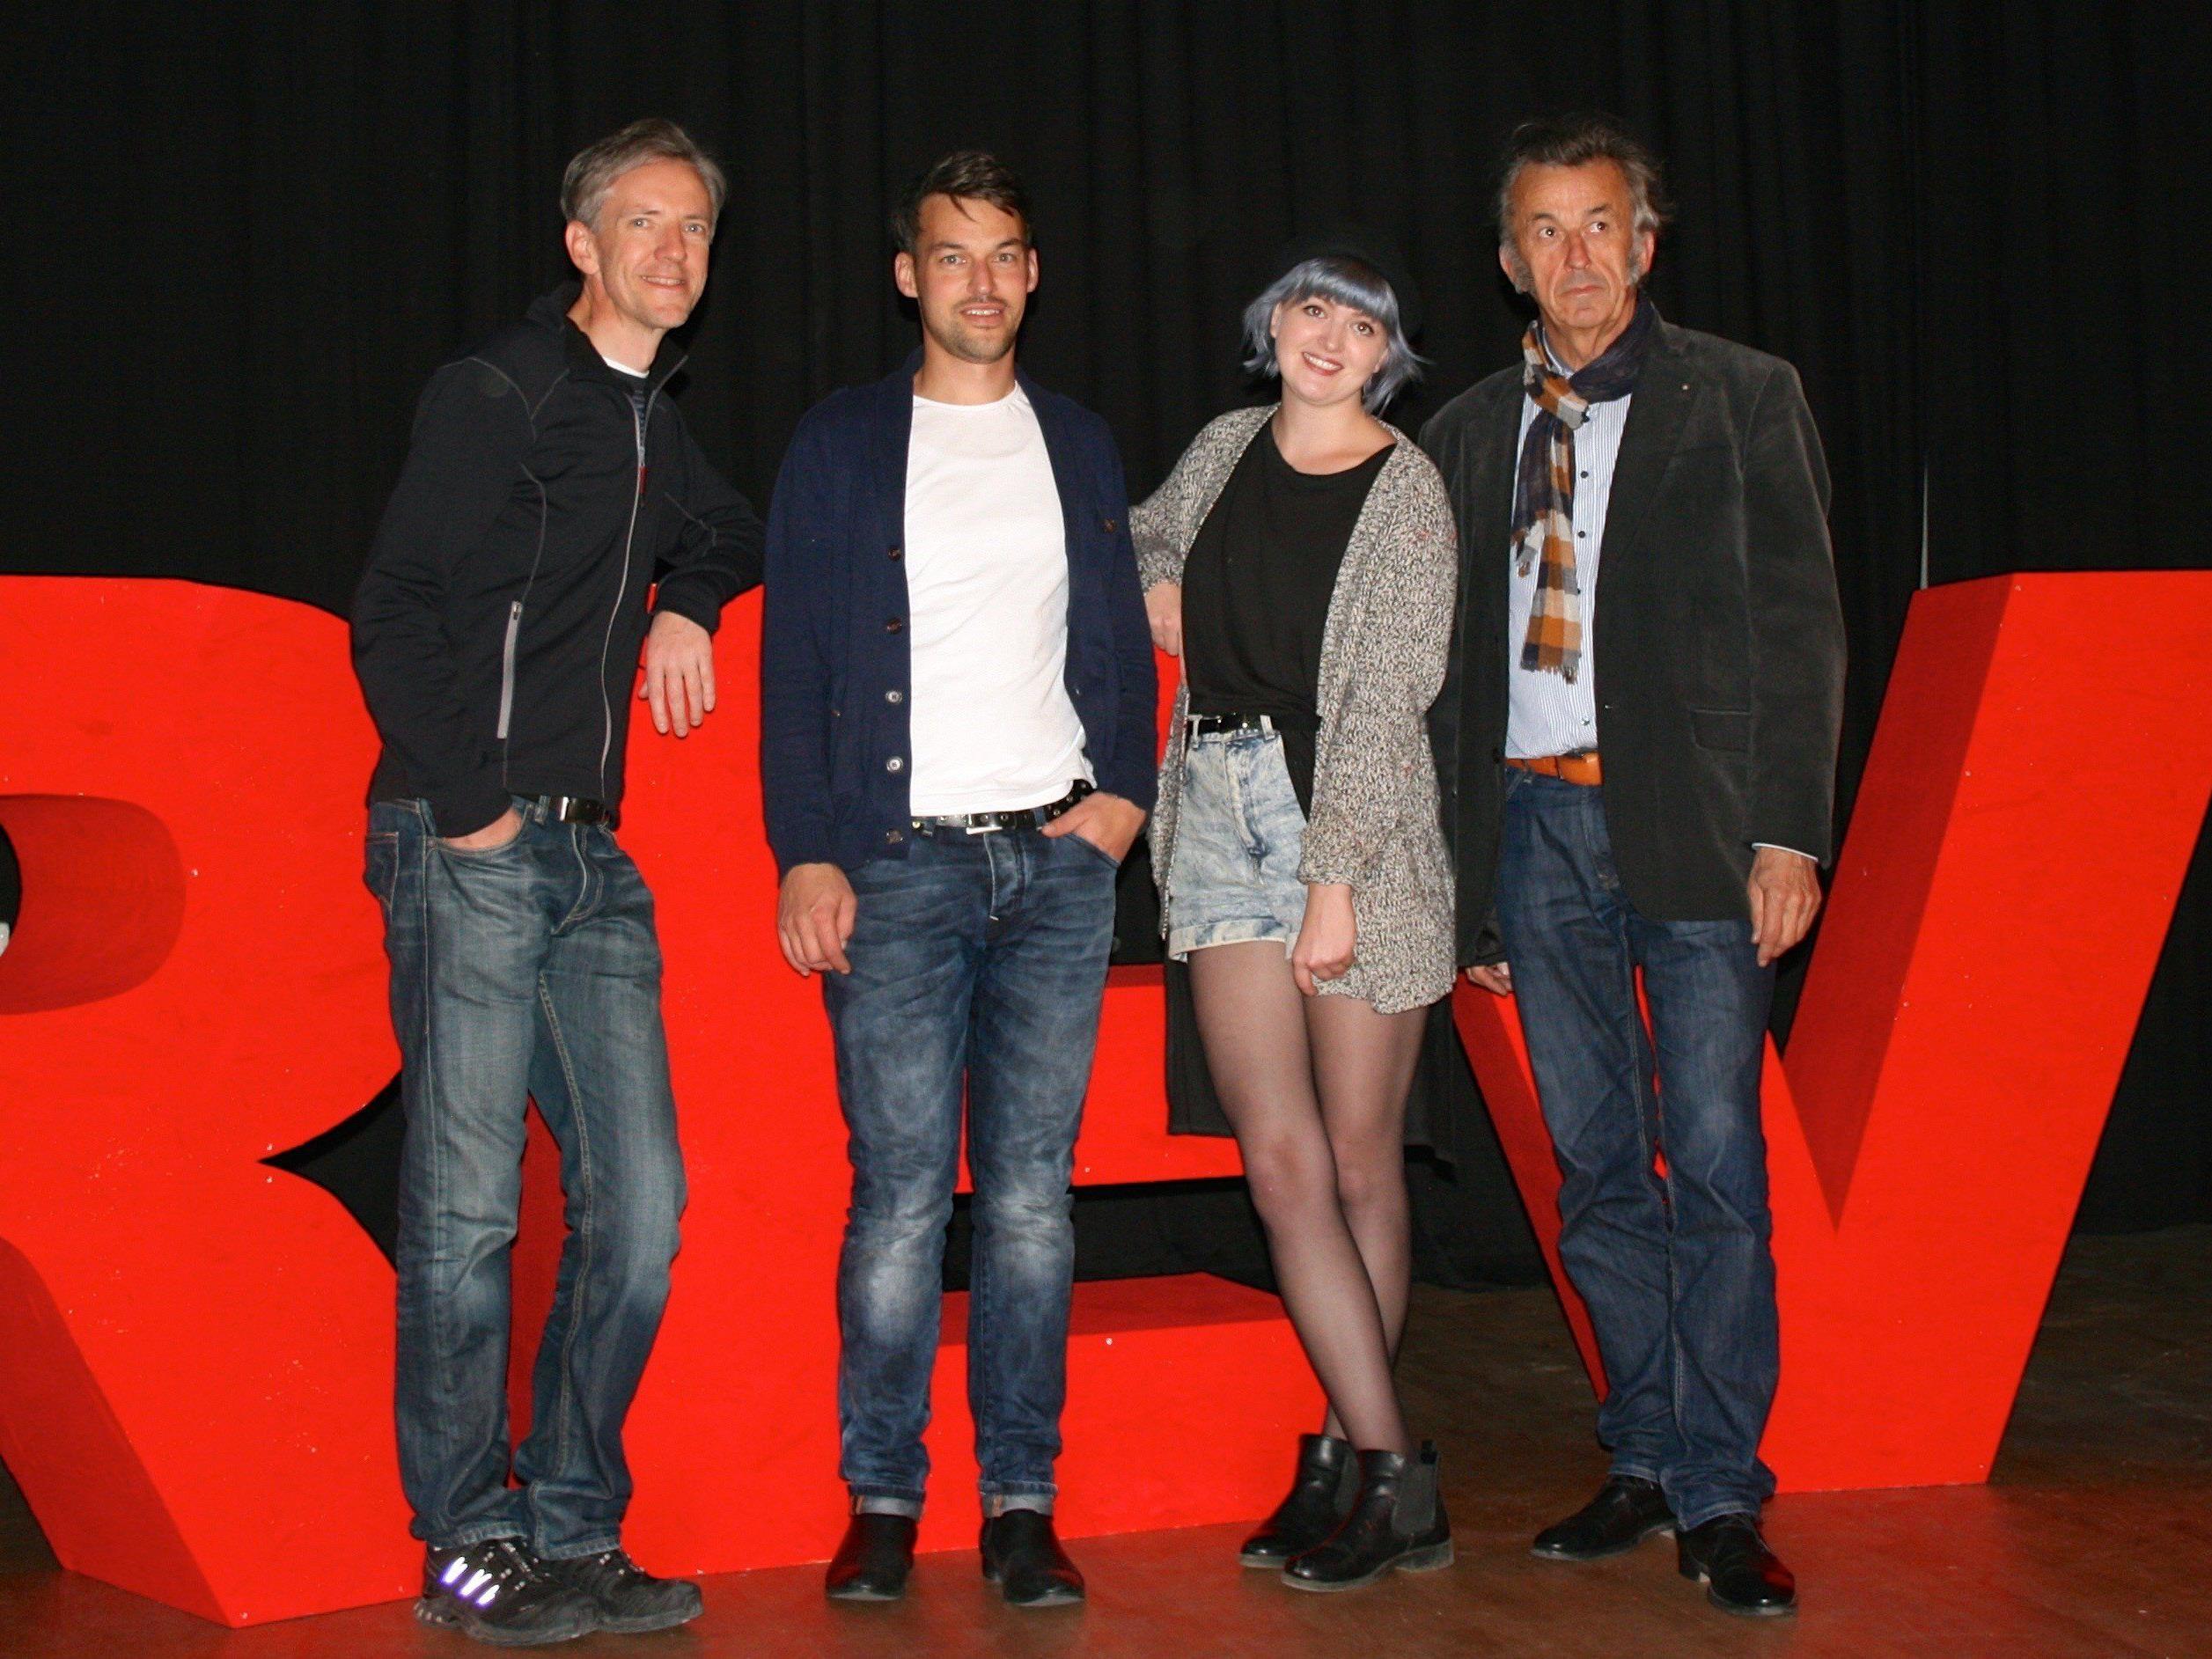 Regisseur Gotthard Bilgeri, die Hauptdarsteller Urs Schwarz und Michael Bartenstein sowie Kostümbildnerin Sara-Lisa Bals.